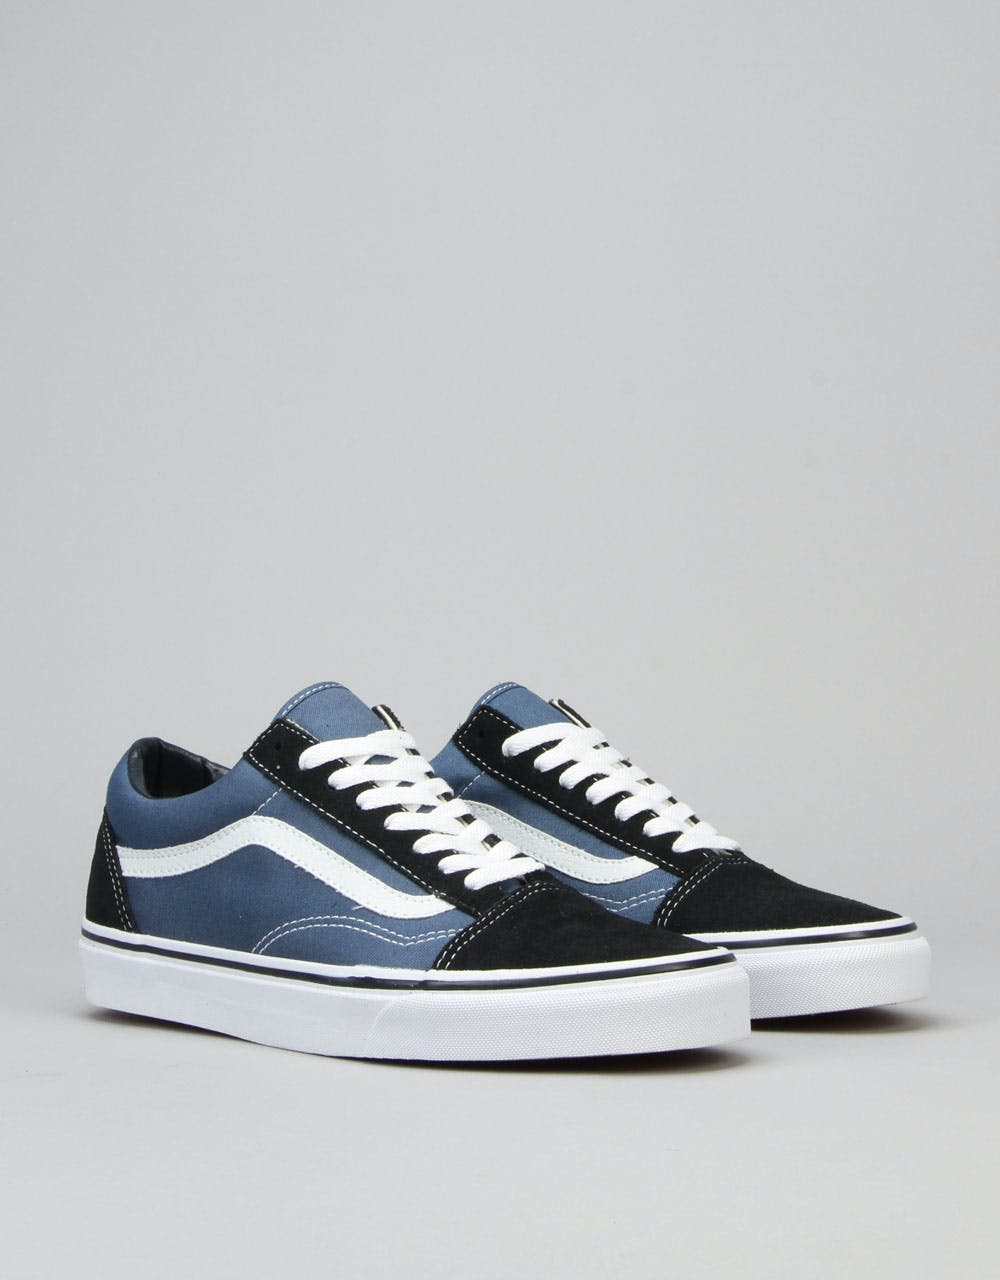 Vans Old Skool Skate Shoes - Navy